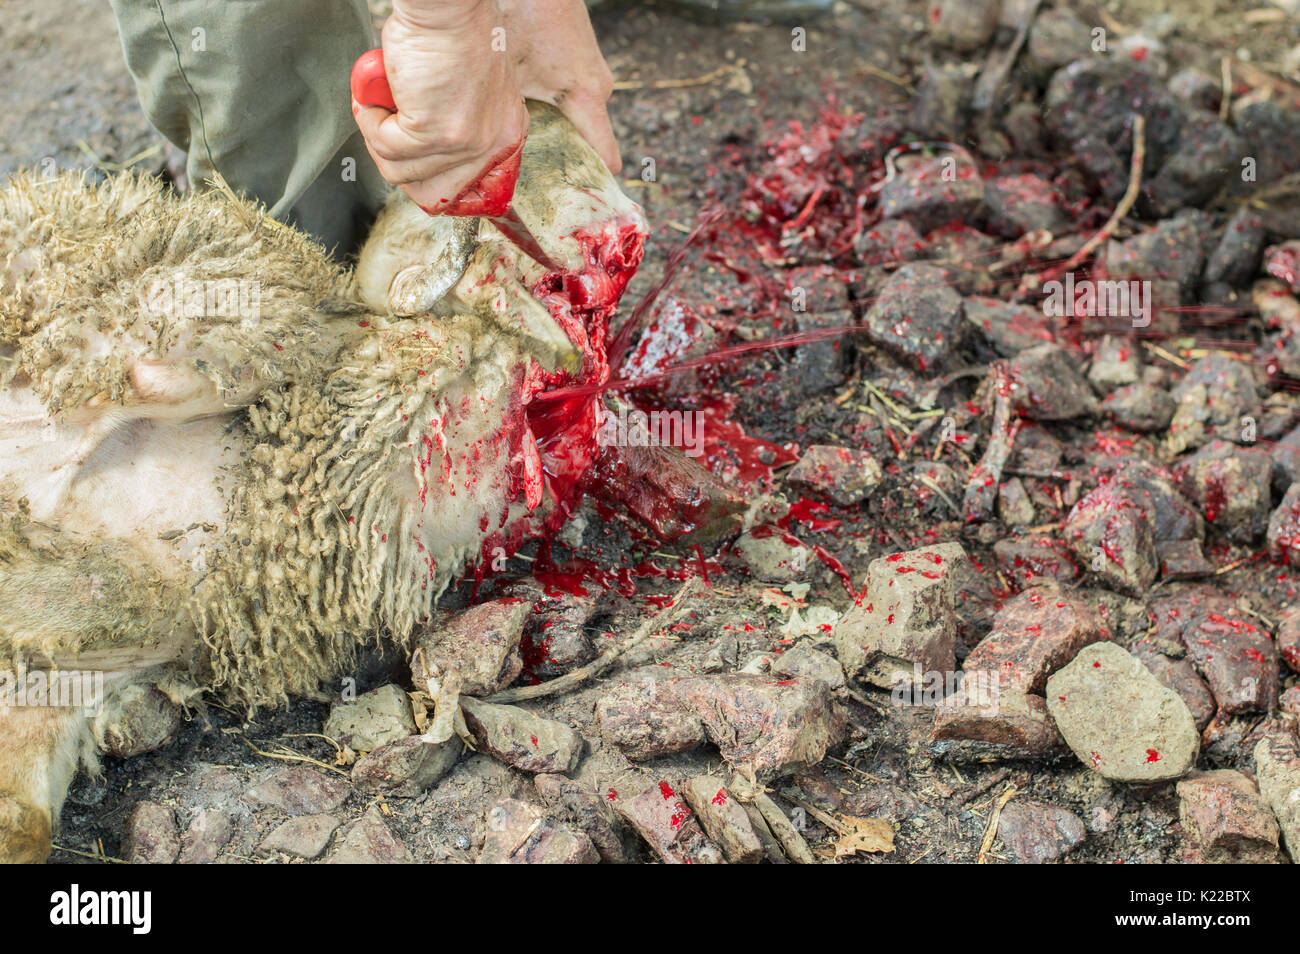 Muslim butcher man cutting a sheep for Eid Al-Adha. Eid al-Adha ...